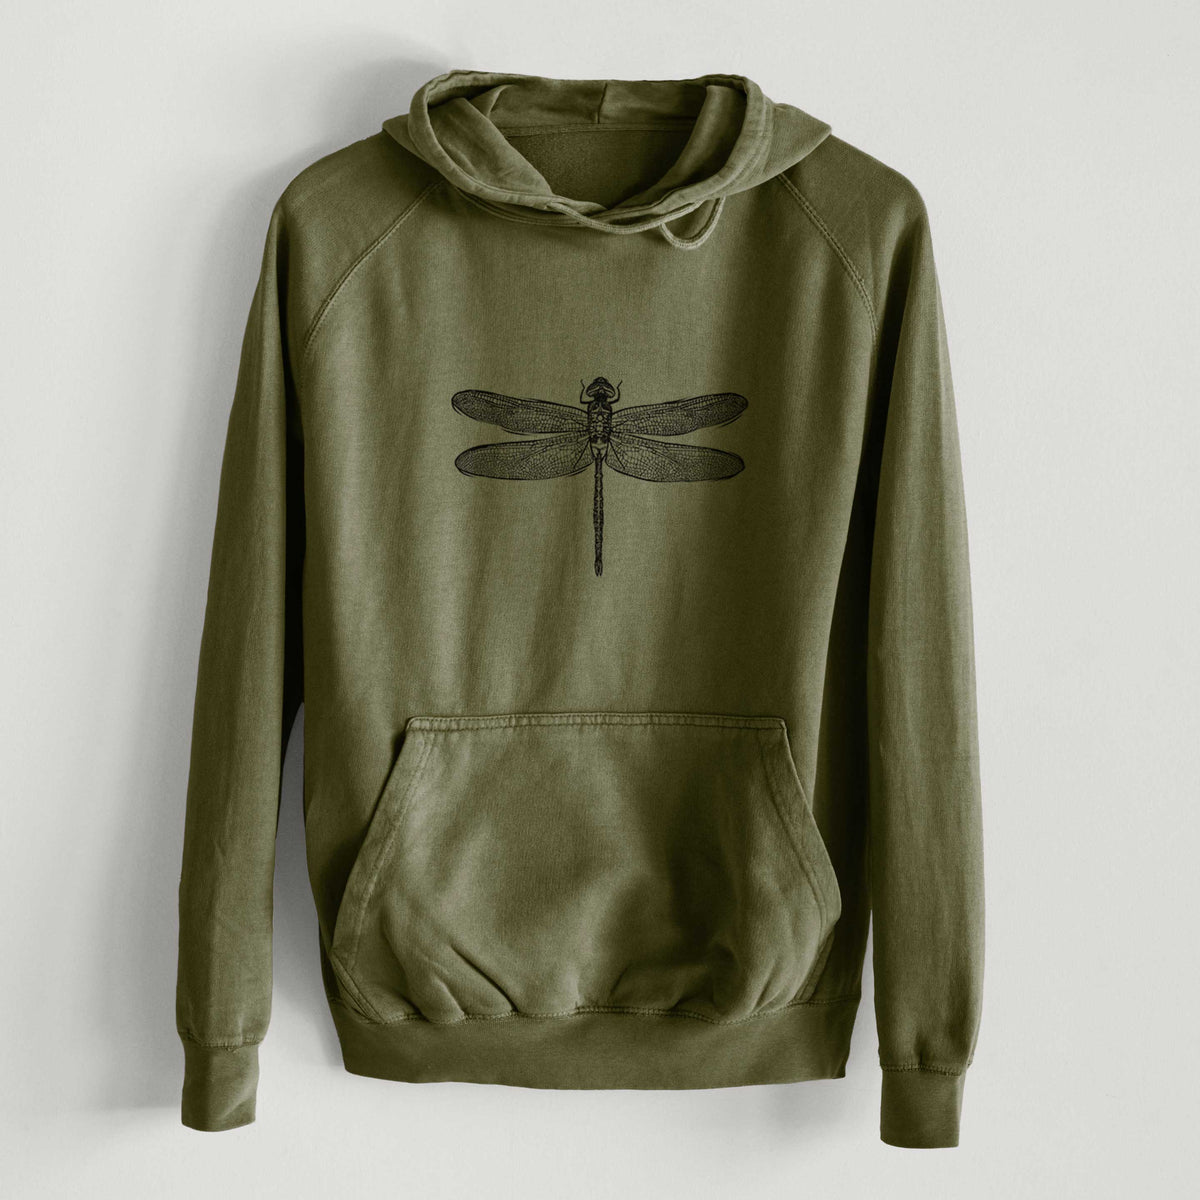 Anax Junius - Green Darner Dragonfly  - Mid-Weight Unisex Vintage 100% Cotton Hoodie